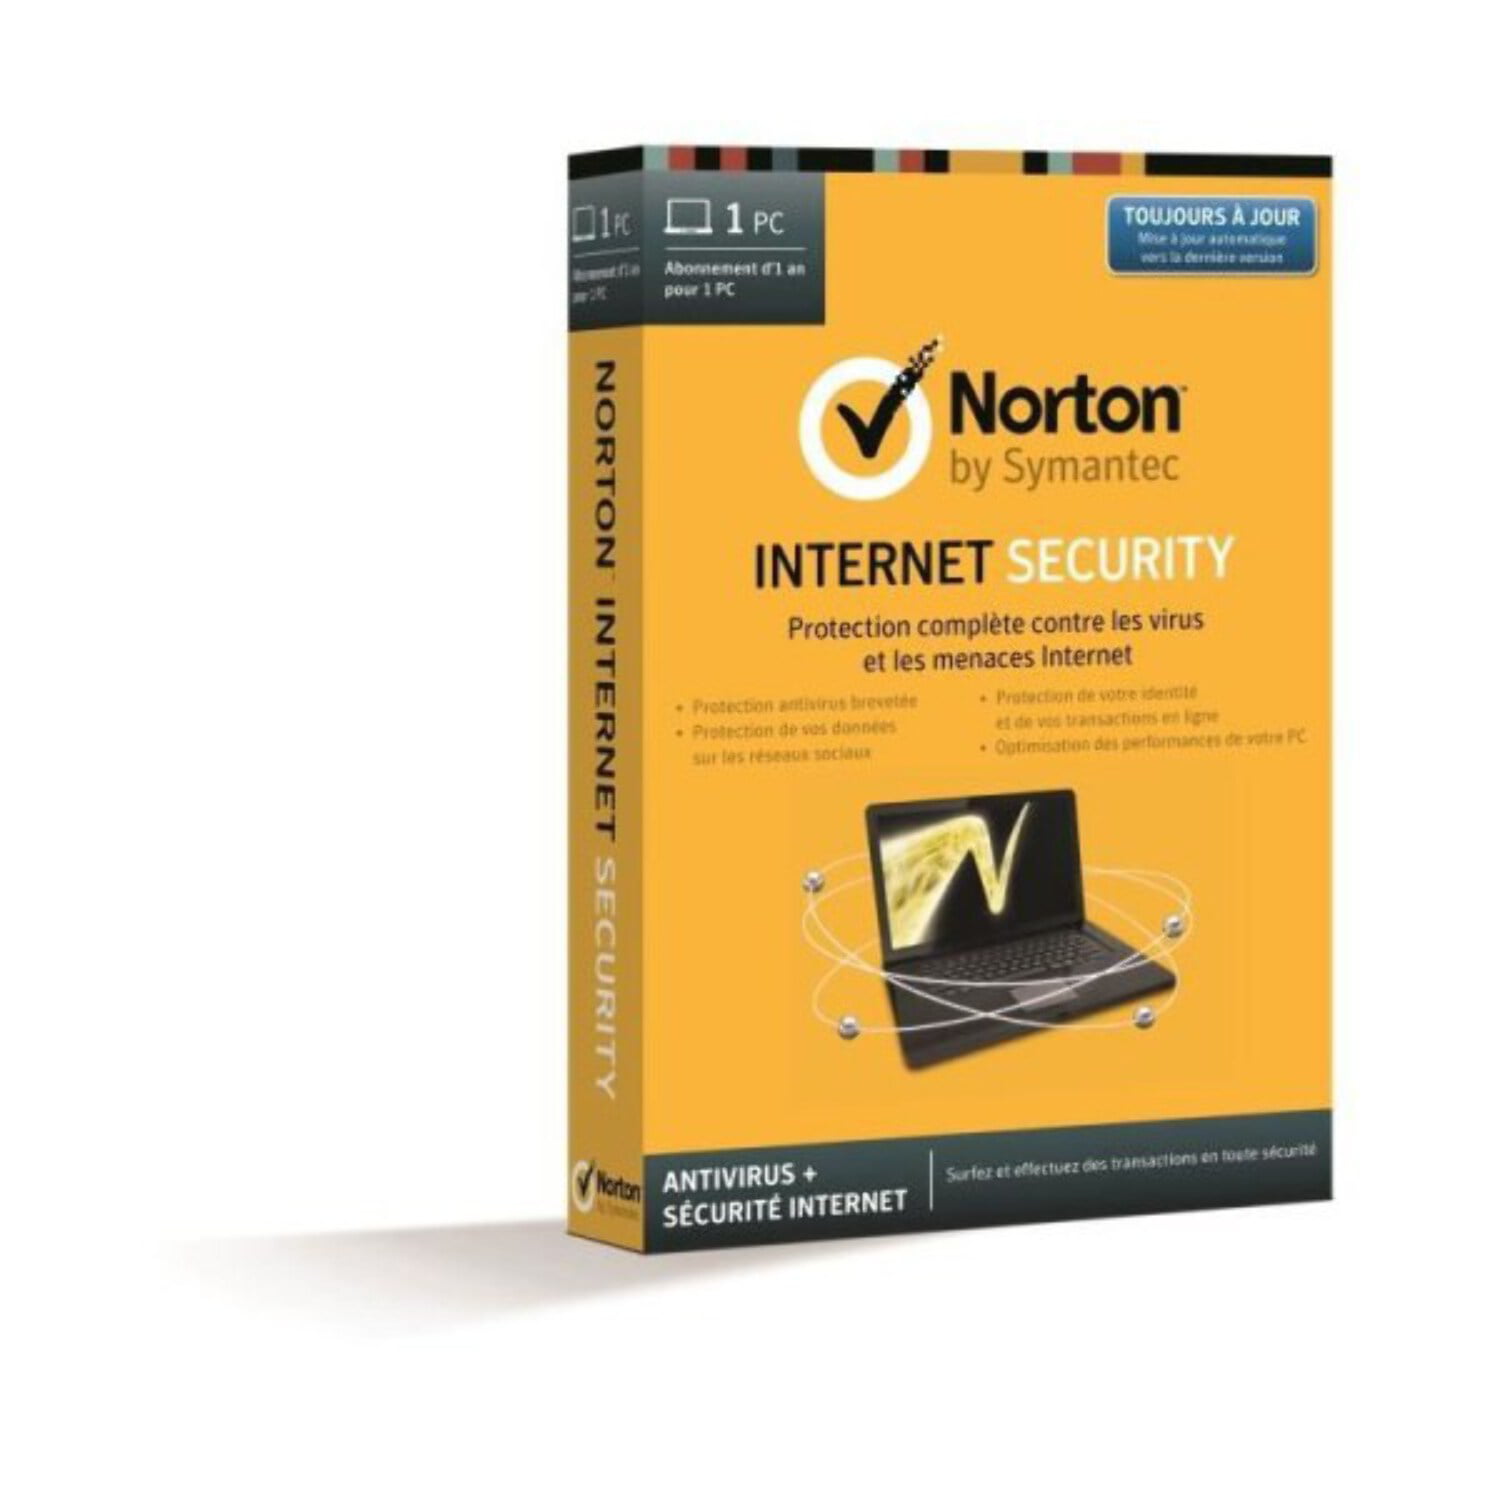 5 min consegna e-mail * NUOVO NORTON ANTIVIRUS PLUS 1 dispositivo PC/MAC del dispositivo di sicurezza 